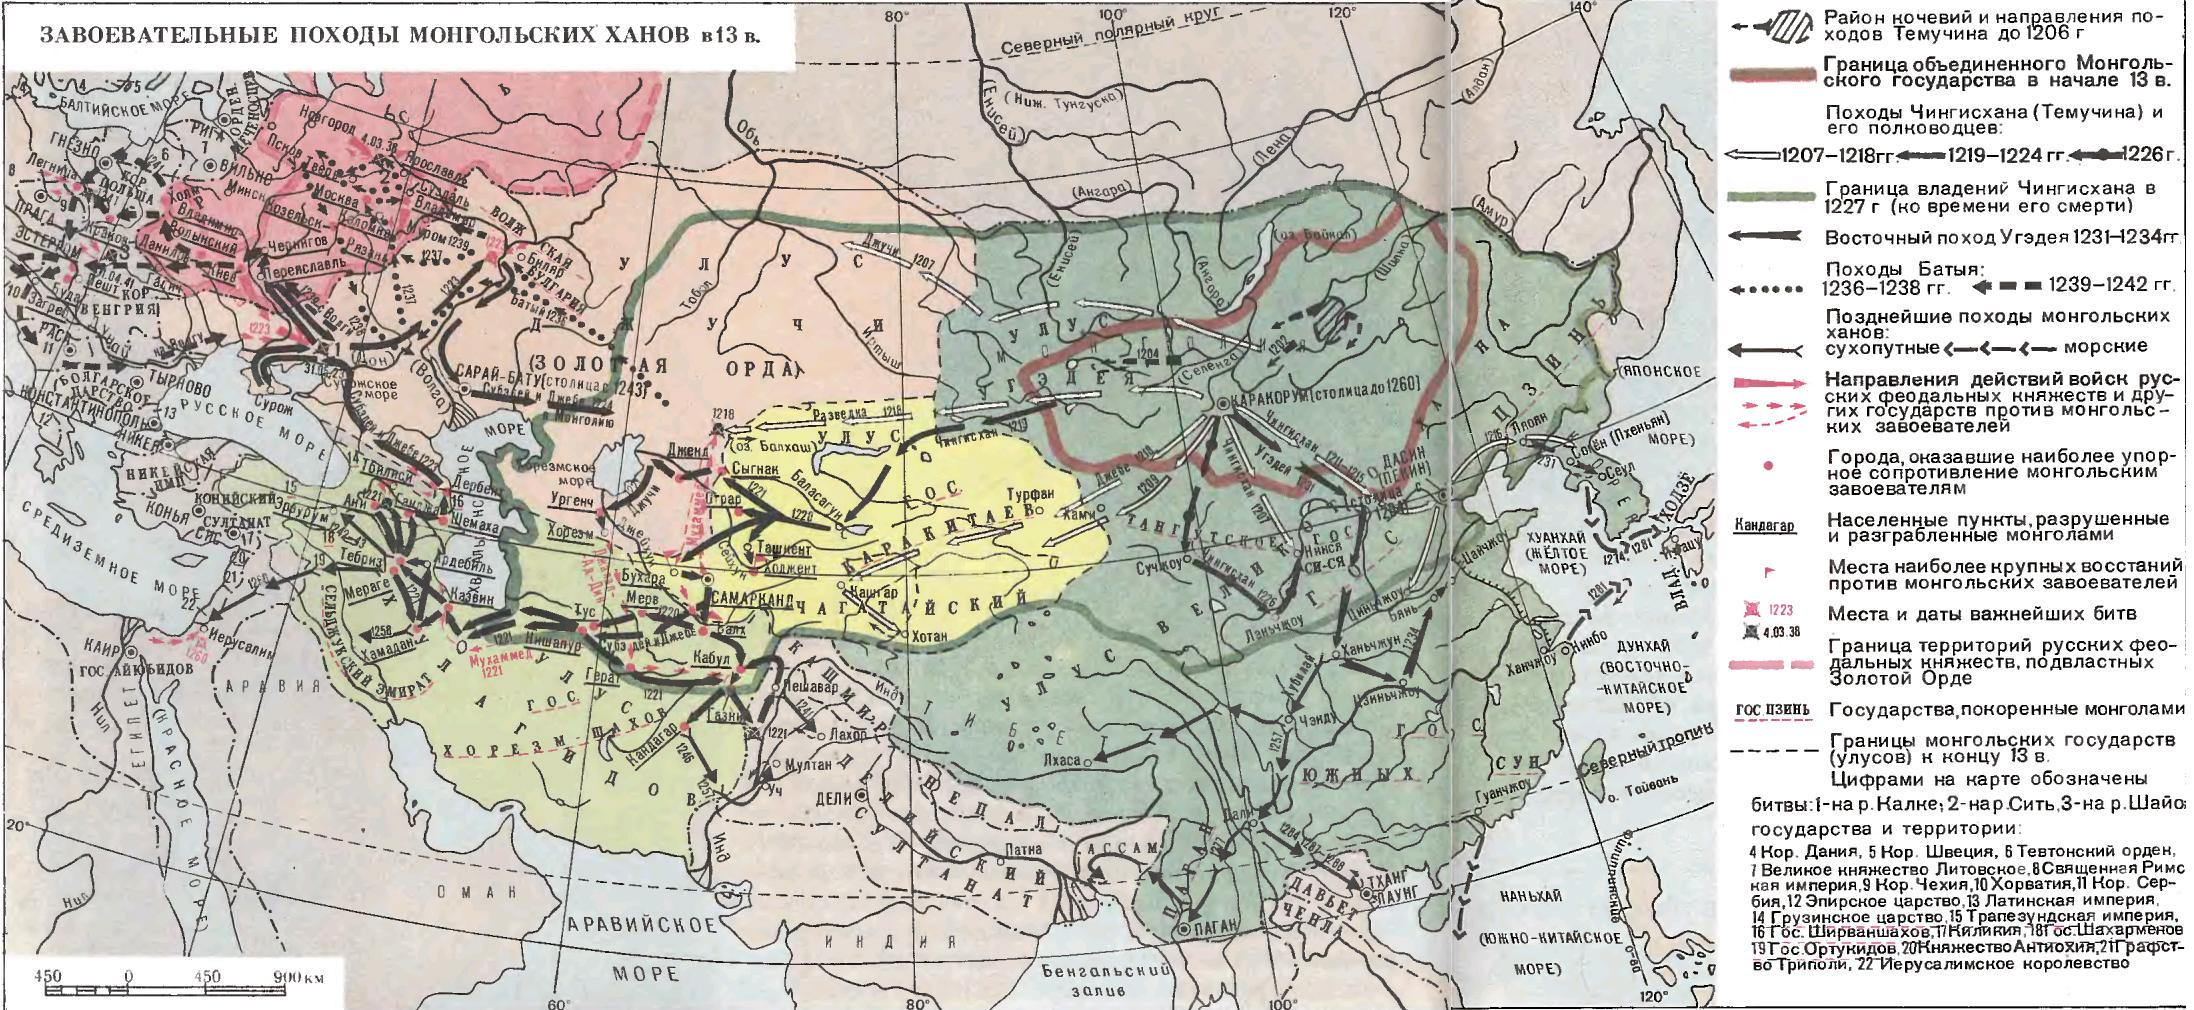 Какой город 1 оказал сопротивление хану батыю. Карта завоеваний монголов в 13 веке. Монгольская Империя 1223. Завоевательные походы Чингисхана карта. Карта Руси 13 век походы монголов.